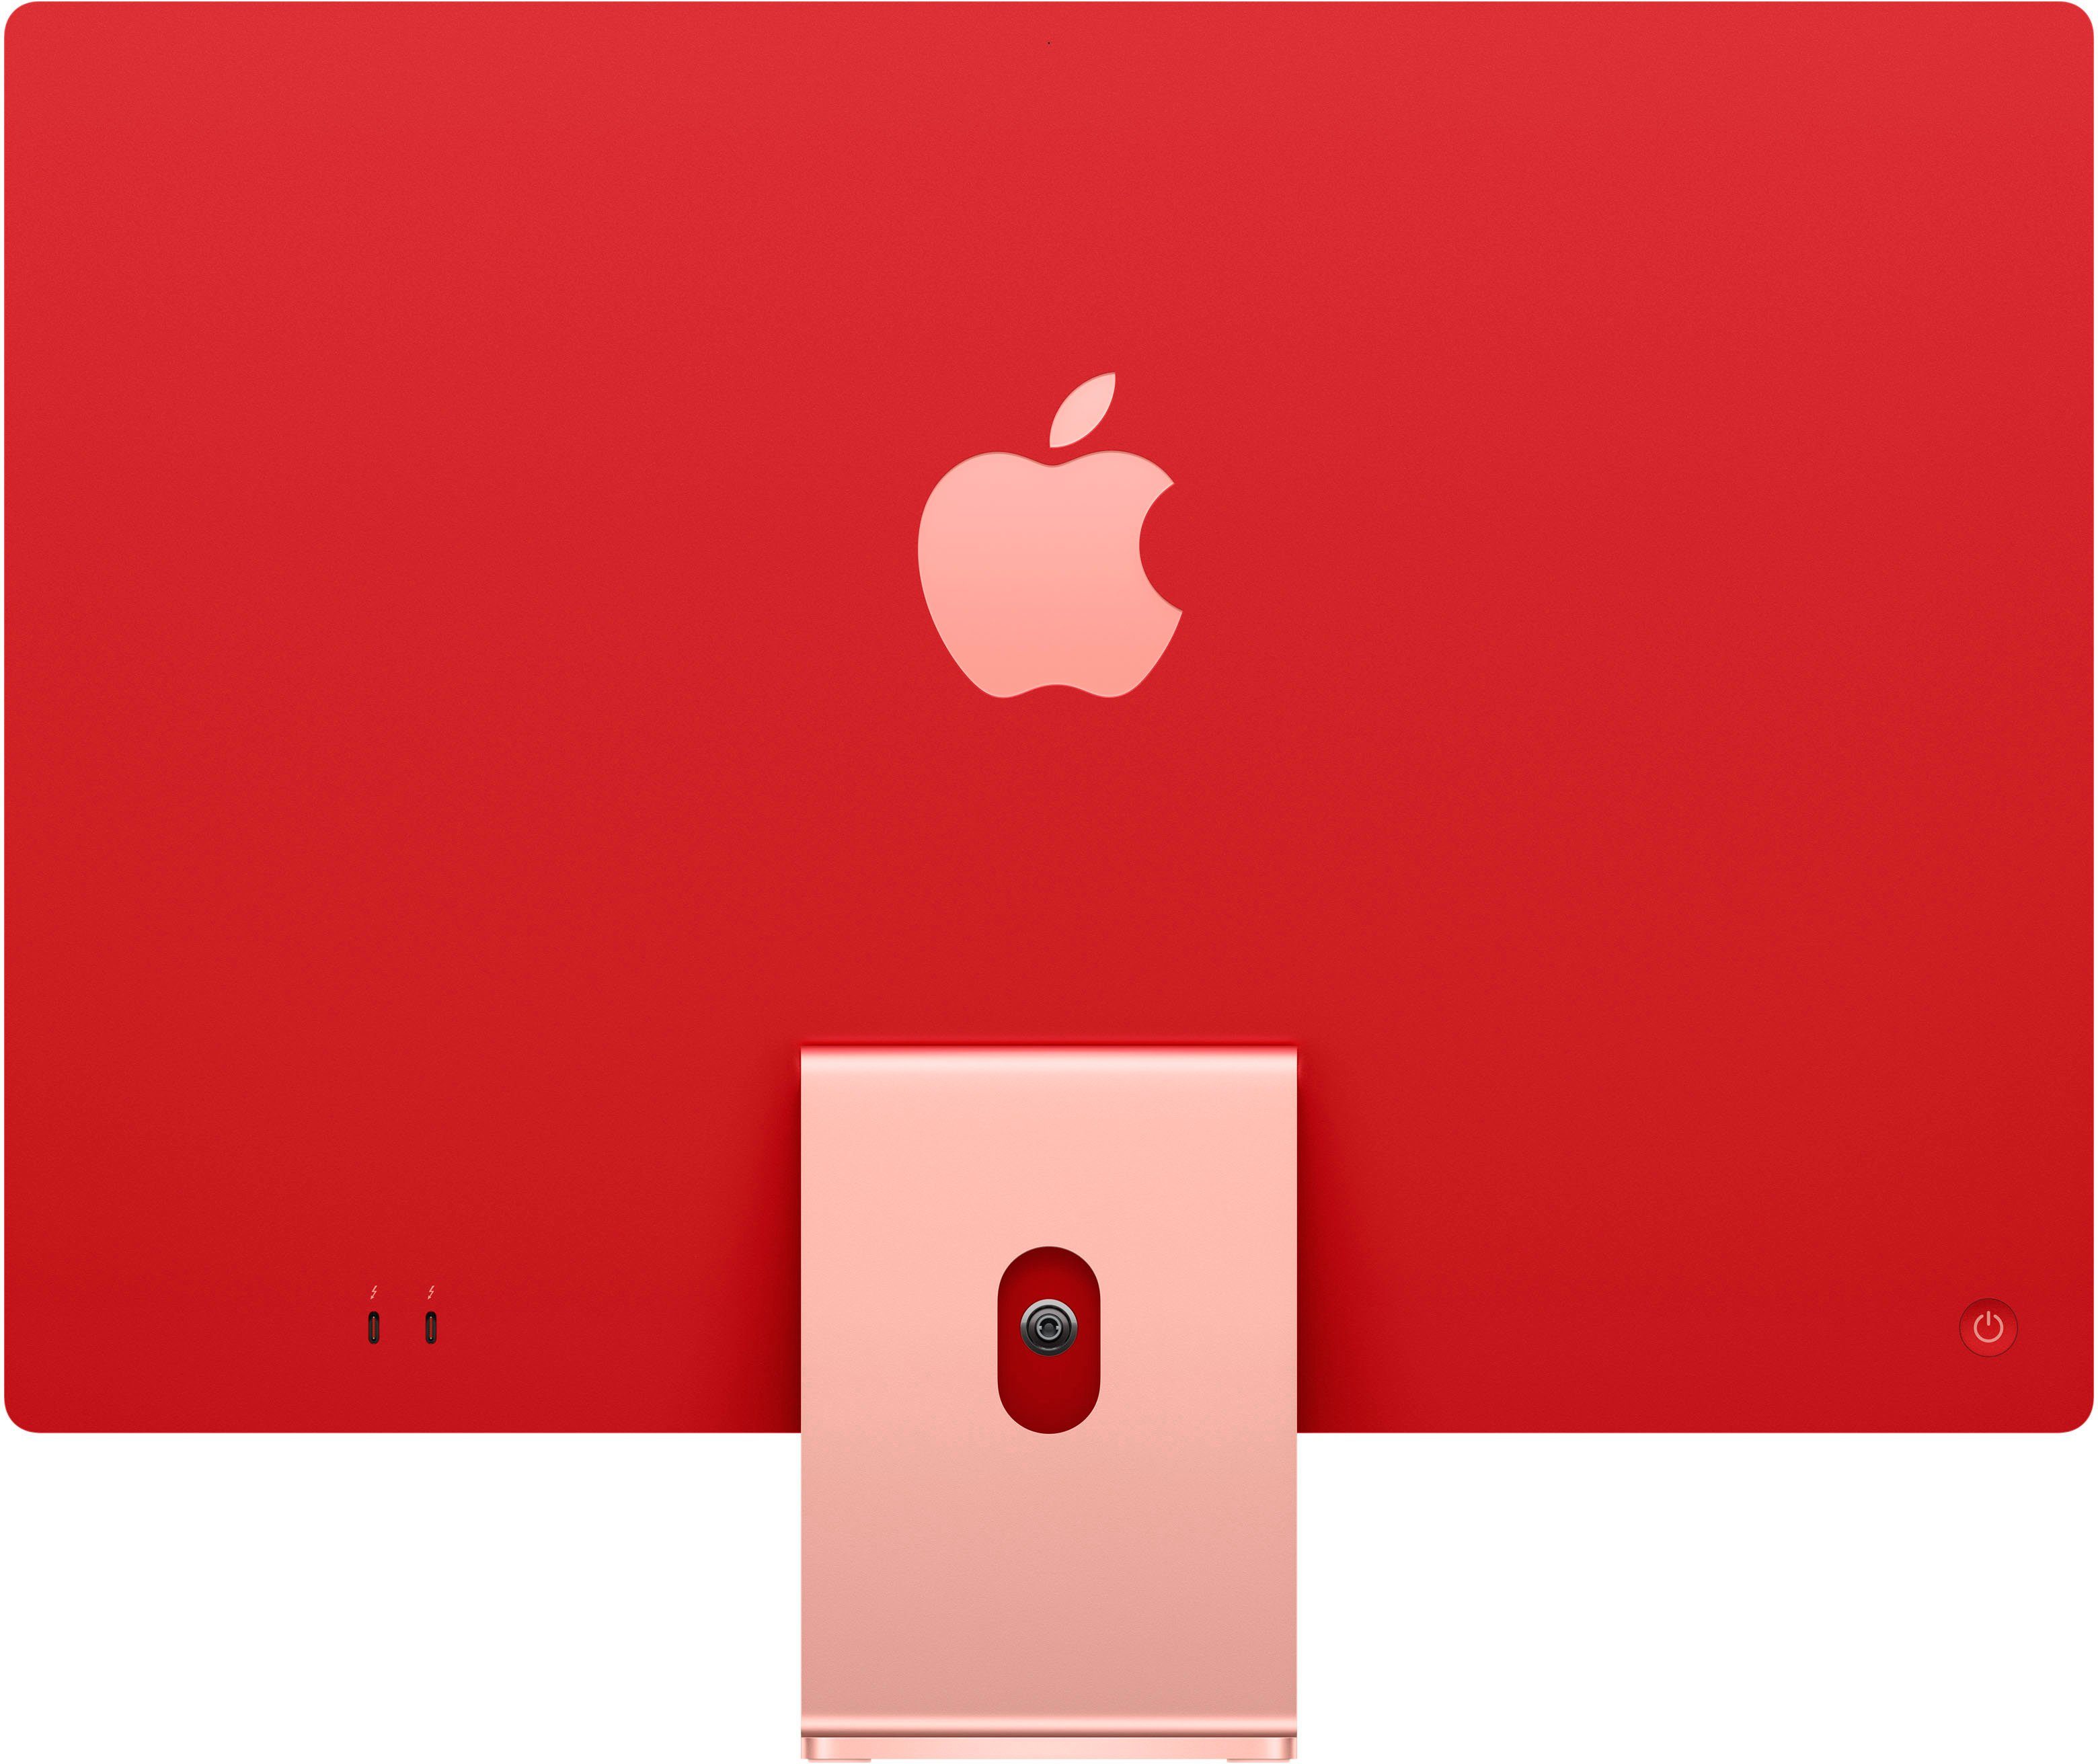 Apple iMac 24" iMac rosé GB 8 Retina 4,5K (24 RAM, M1, GPU, 256 SSD) mit Display Zoll, Apple GB 7-Core